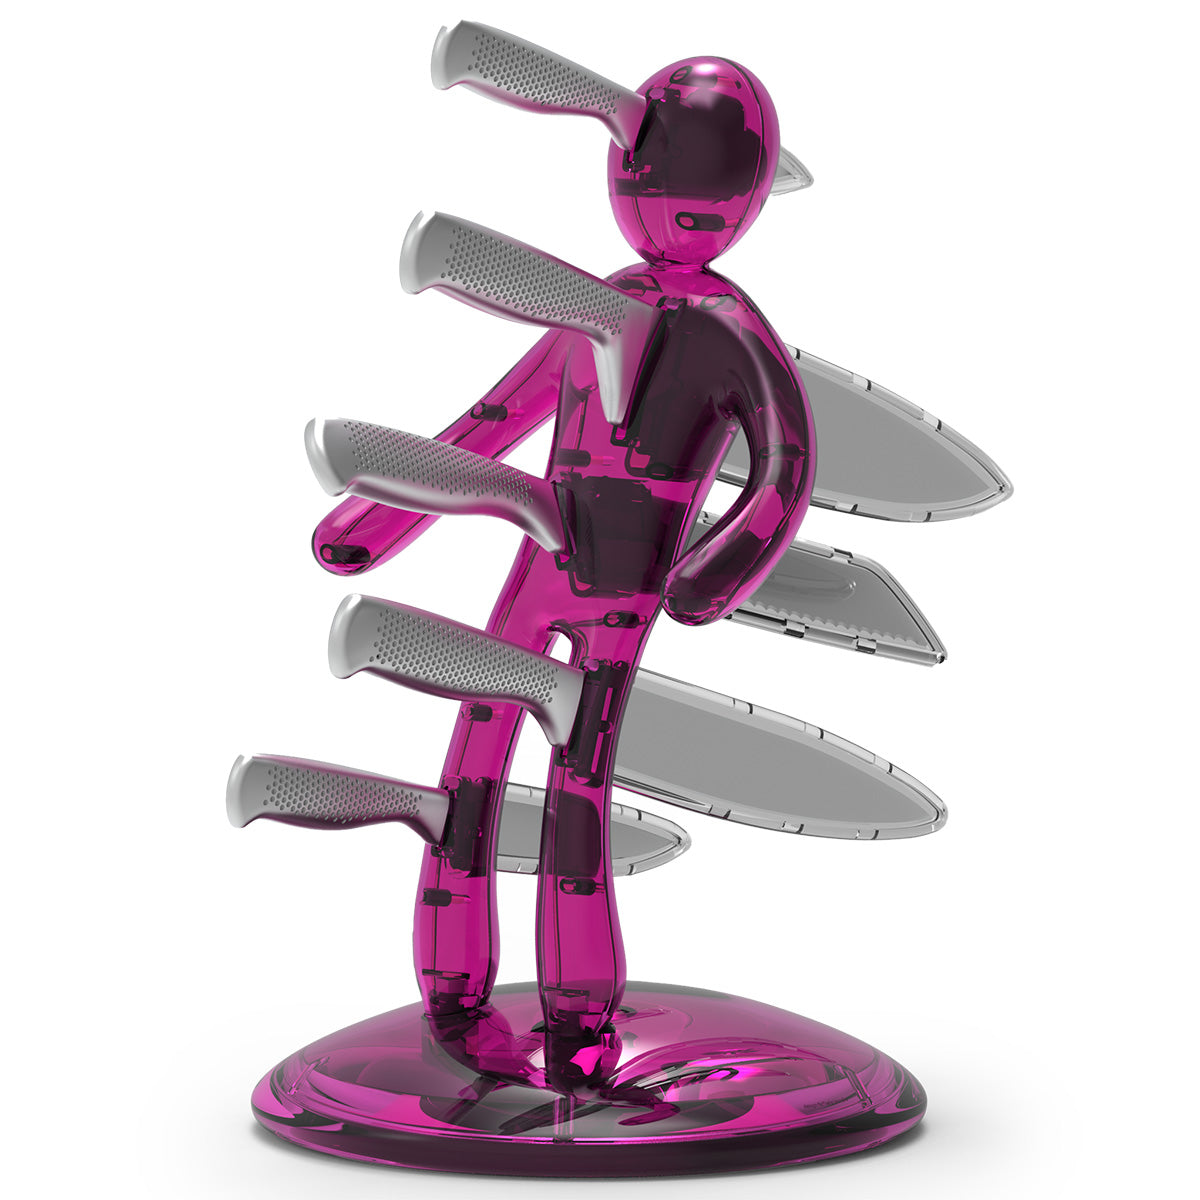 Voodoo/TheEx "Classic Edition" Set di coltelli - Supporto in plastica traslucida rosa